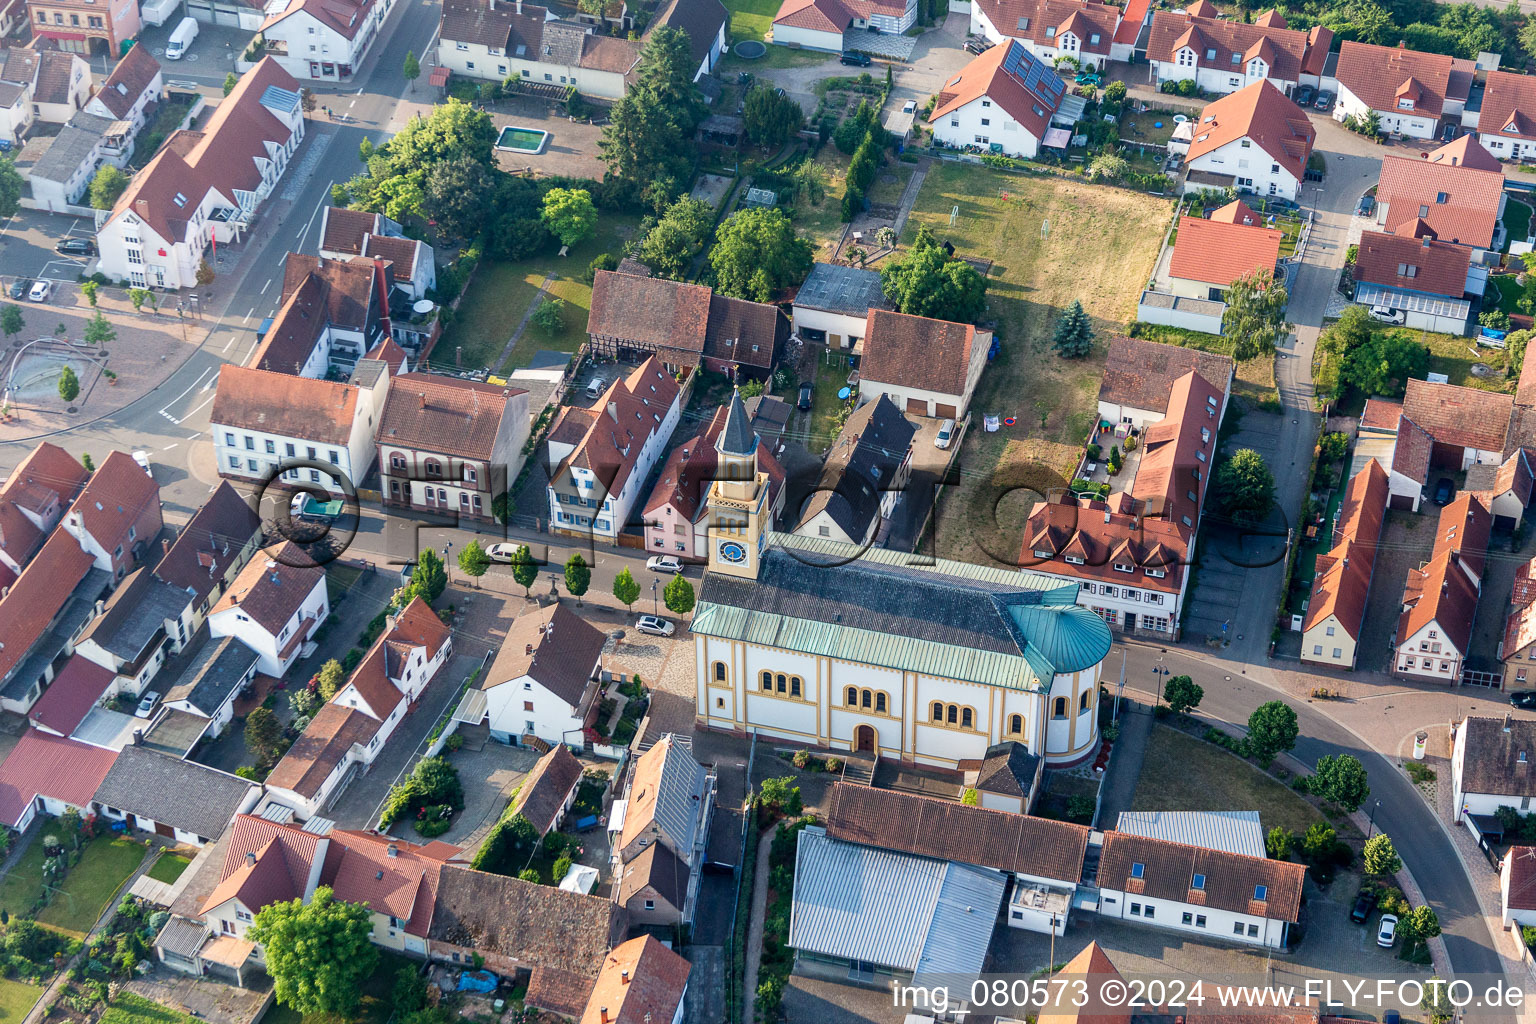 Vue aérienne de Bâtiment d'église au centre du village à Lingenfeld dans le département Rhénanie-Palatinat, Allemagne